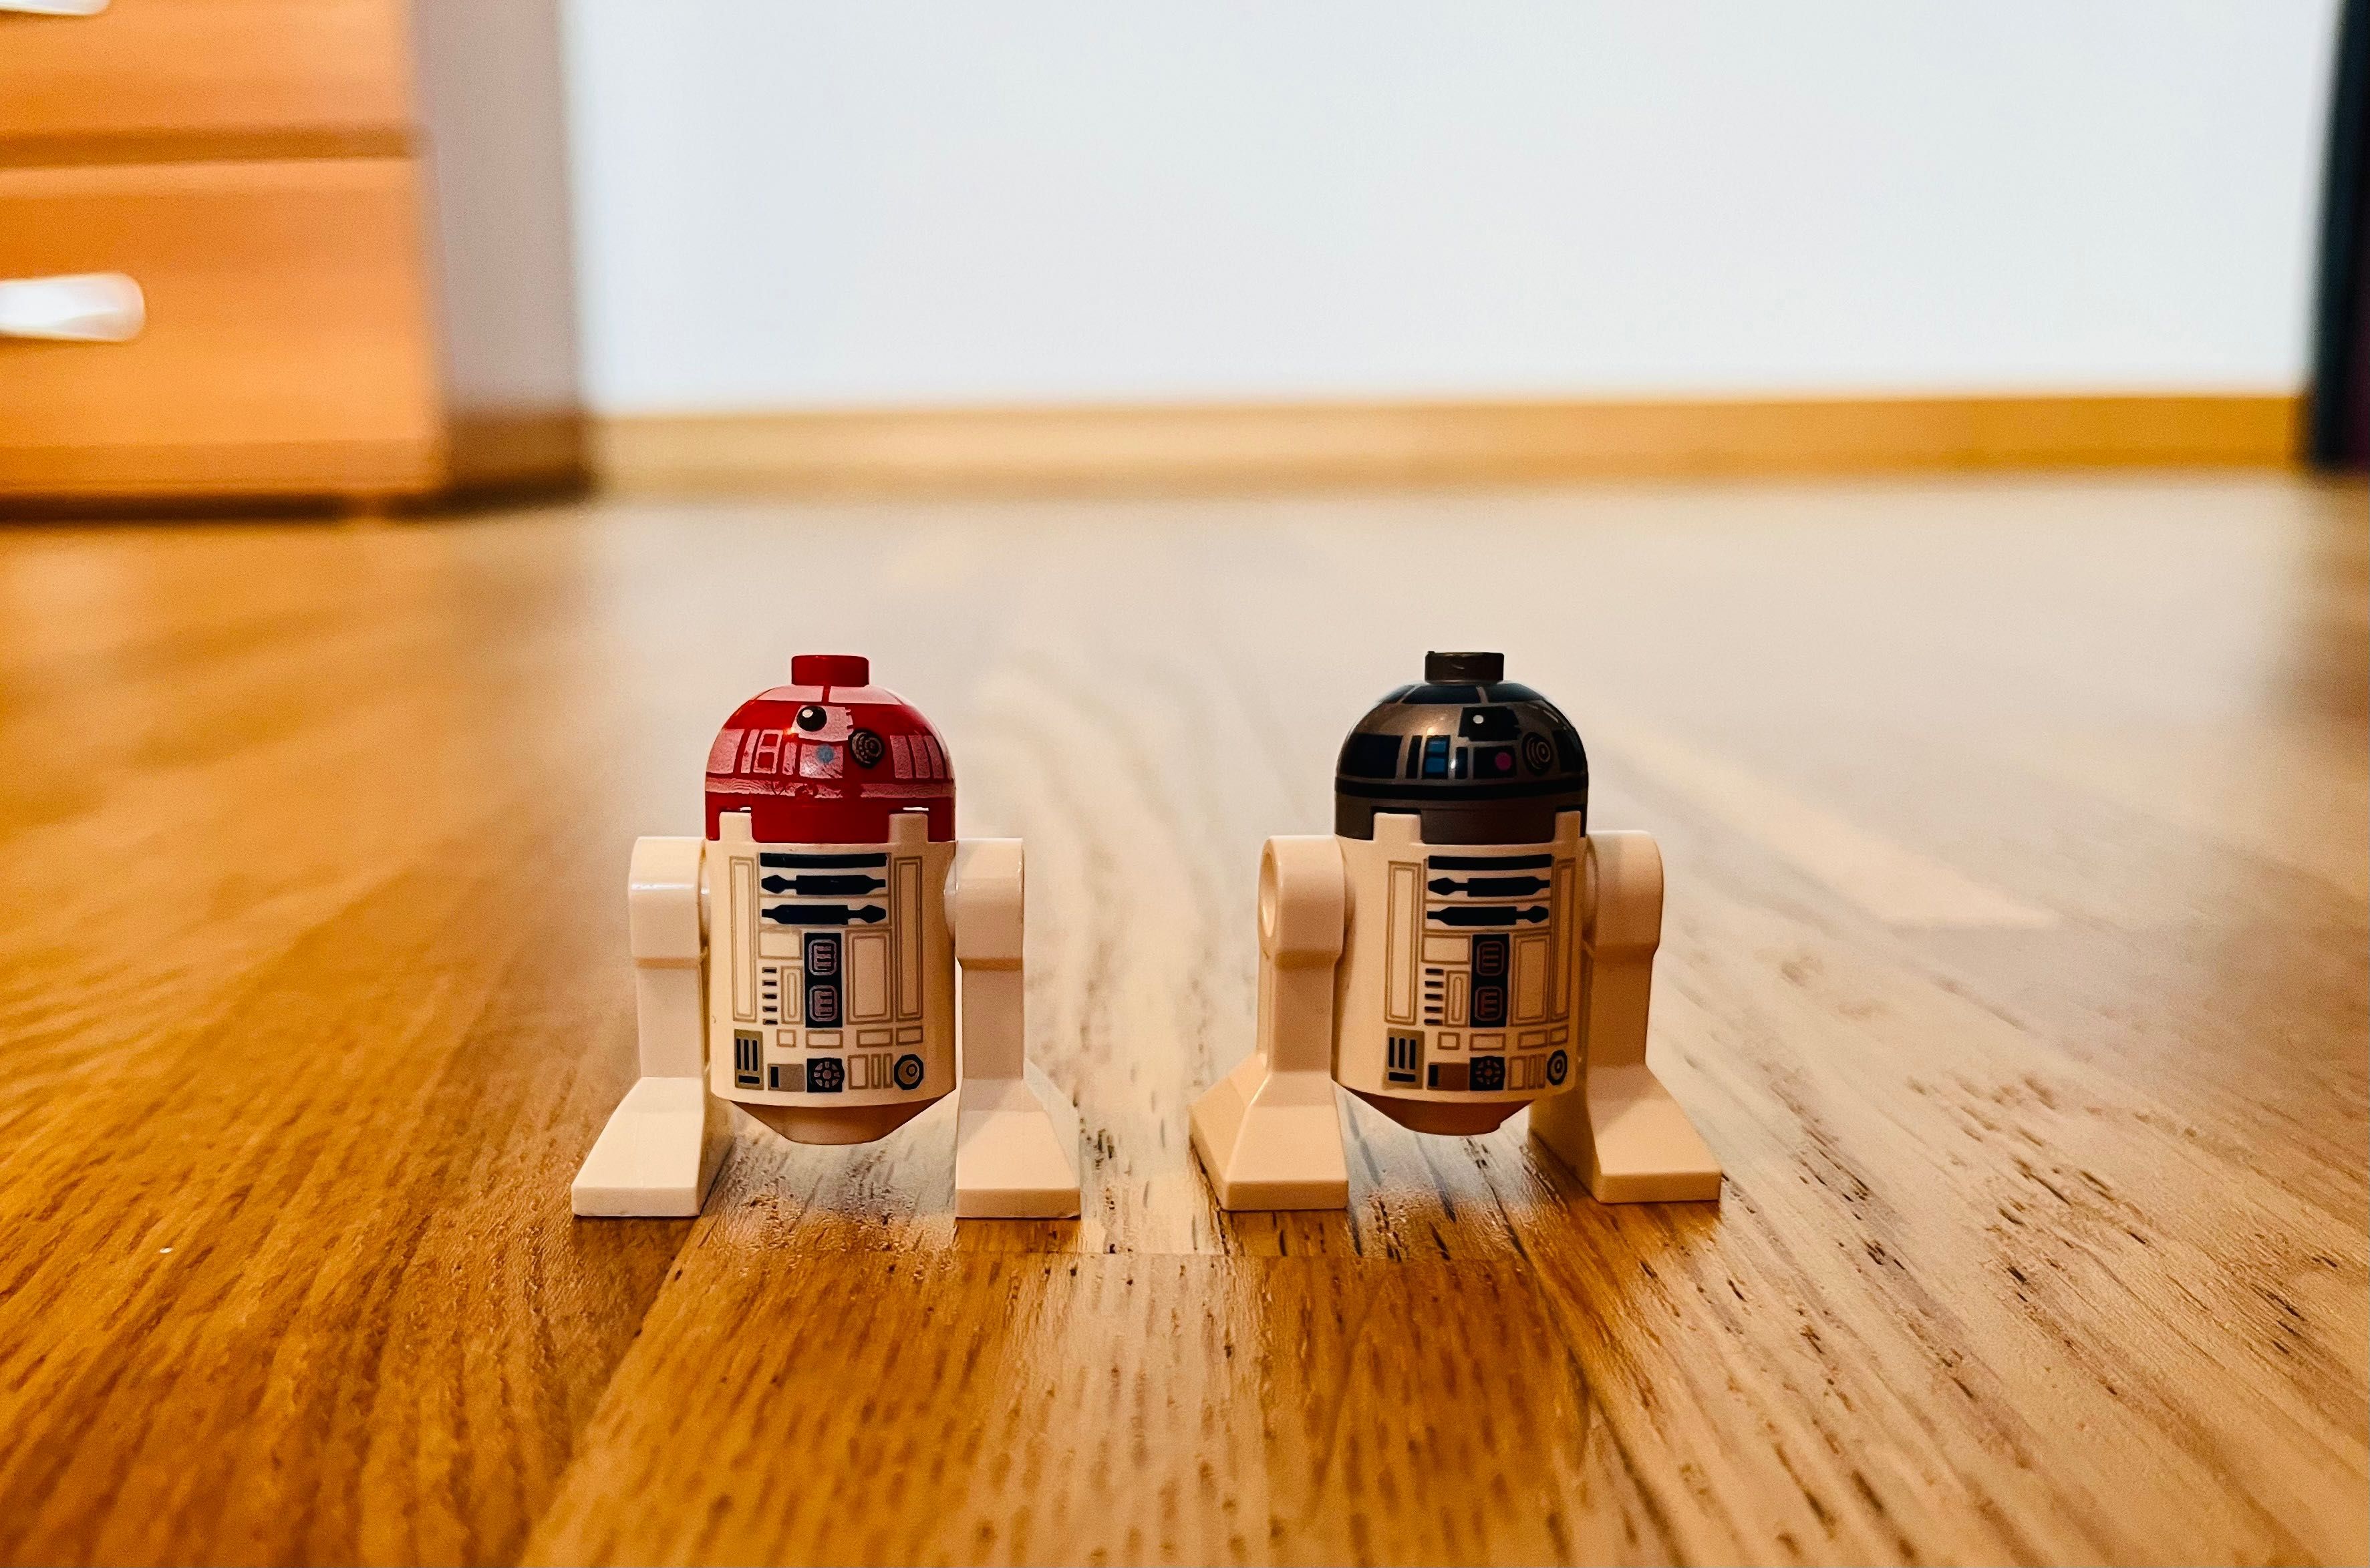 Minifigurine si seturi Star Wars